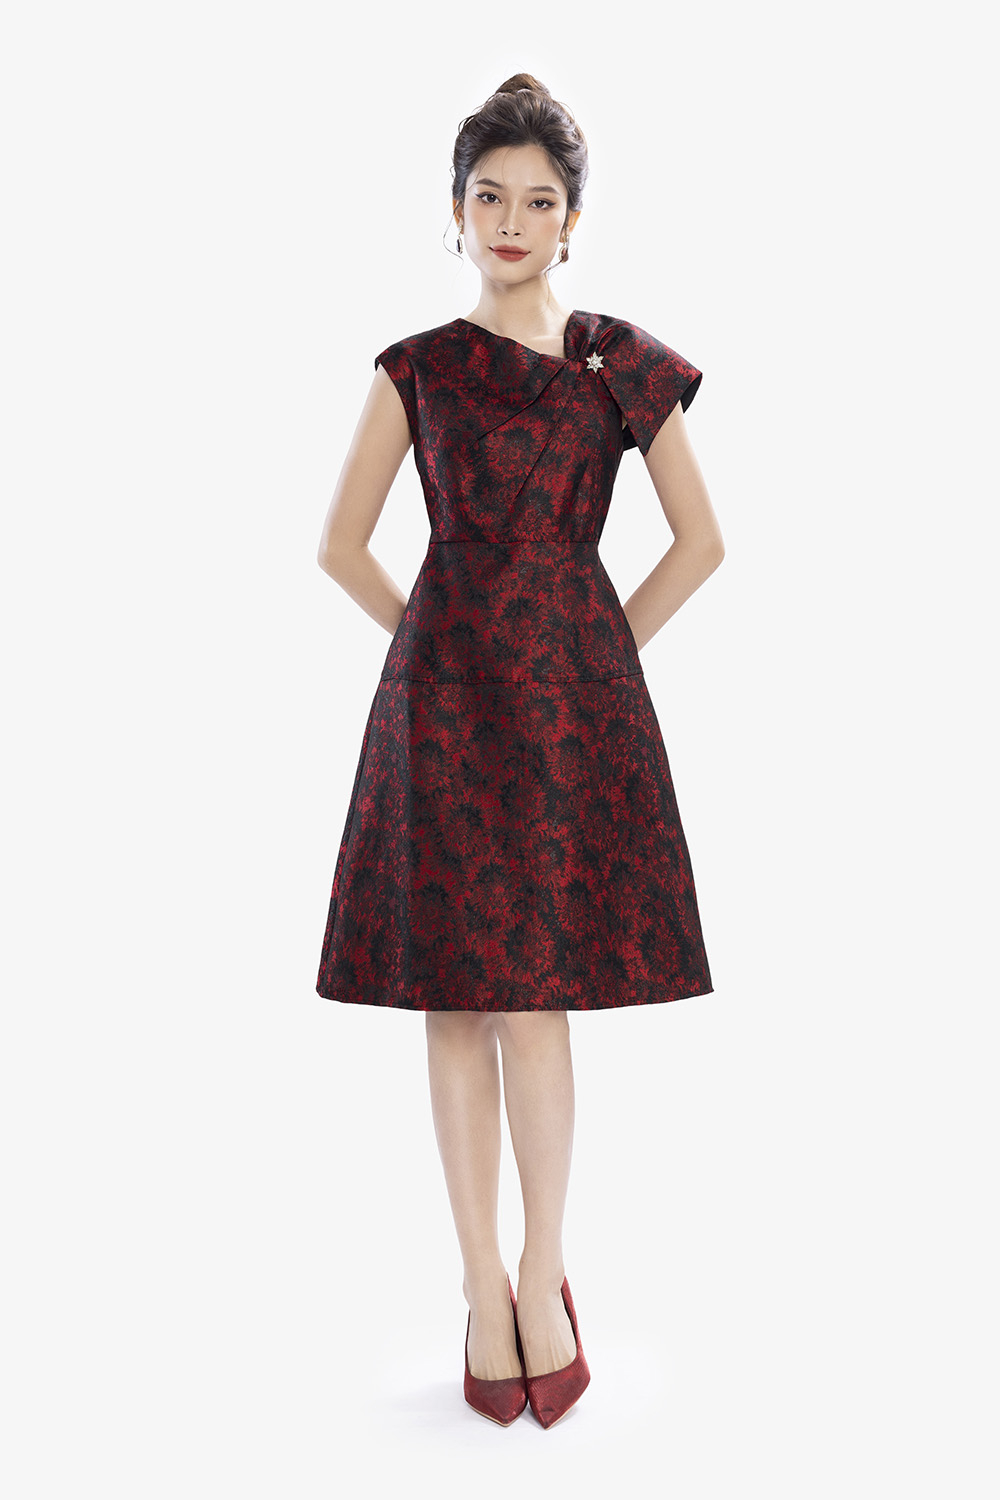 Đầm đỏ dáng xòe chữ A phối hoa nổi HL26-15 | Thời trang công sở K&K Fashion